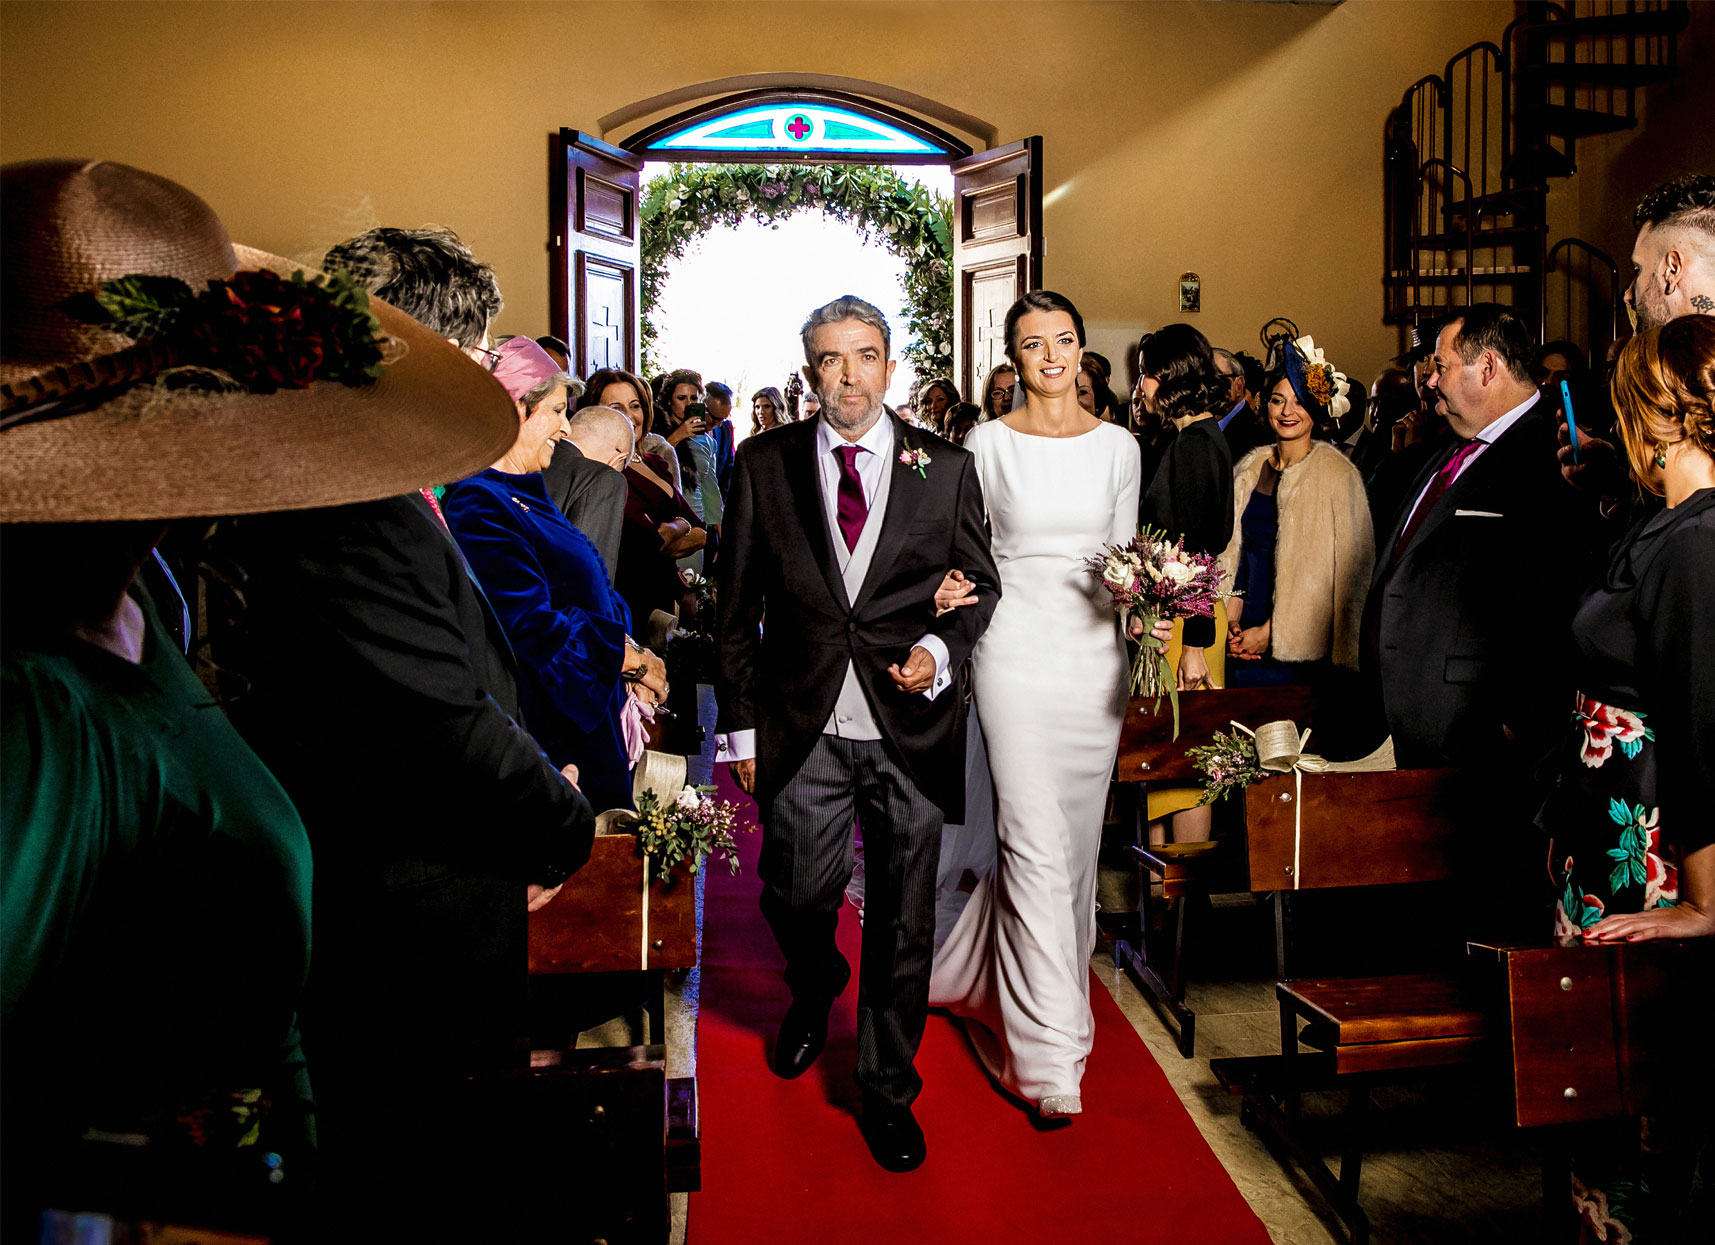 La novia entrando a la iglesia del brazo de su padre.